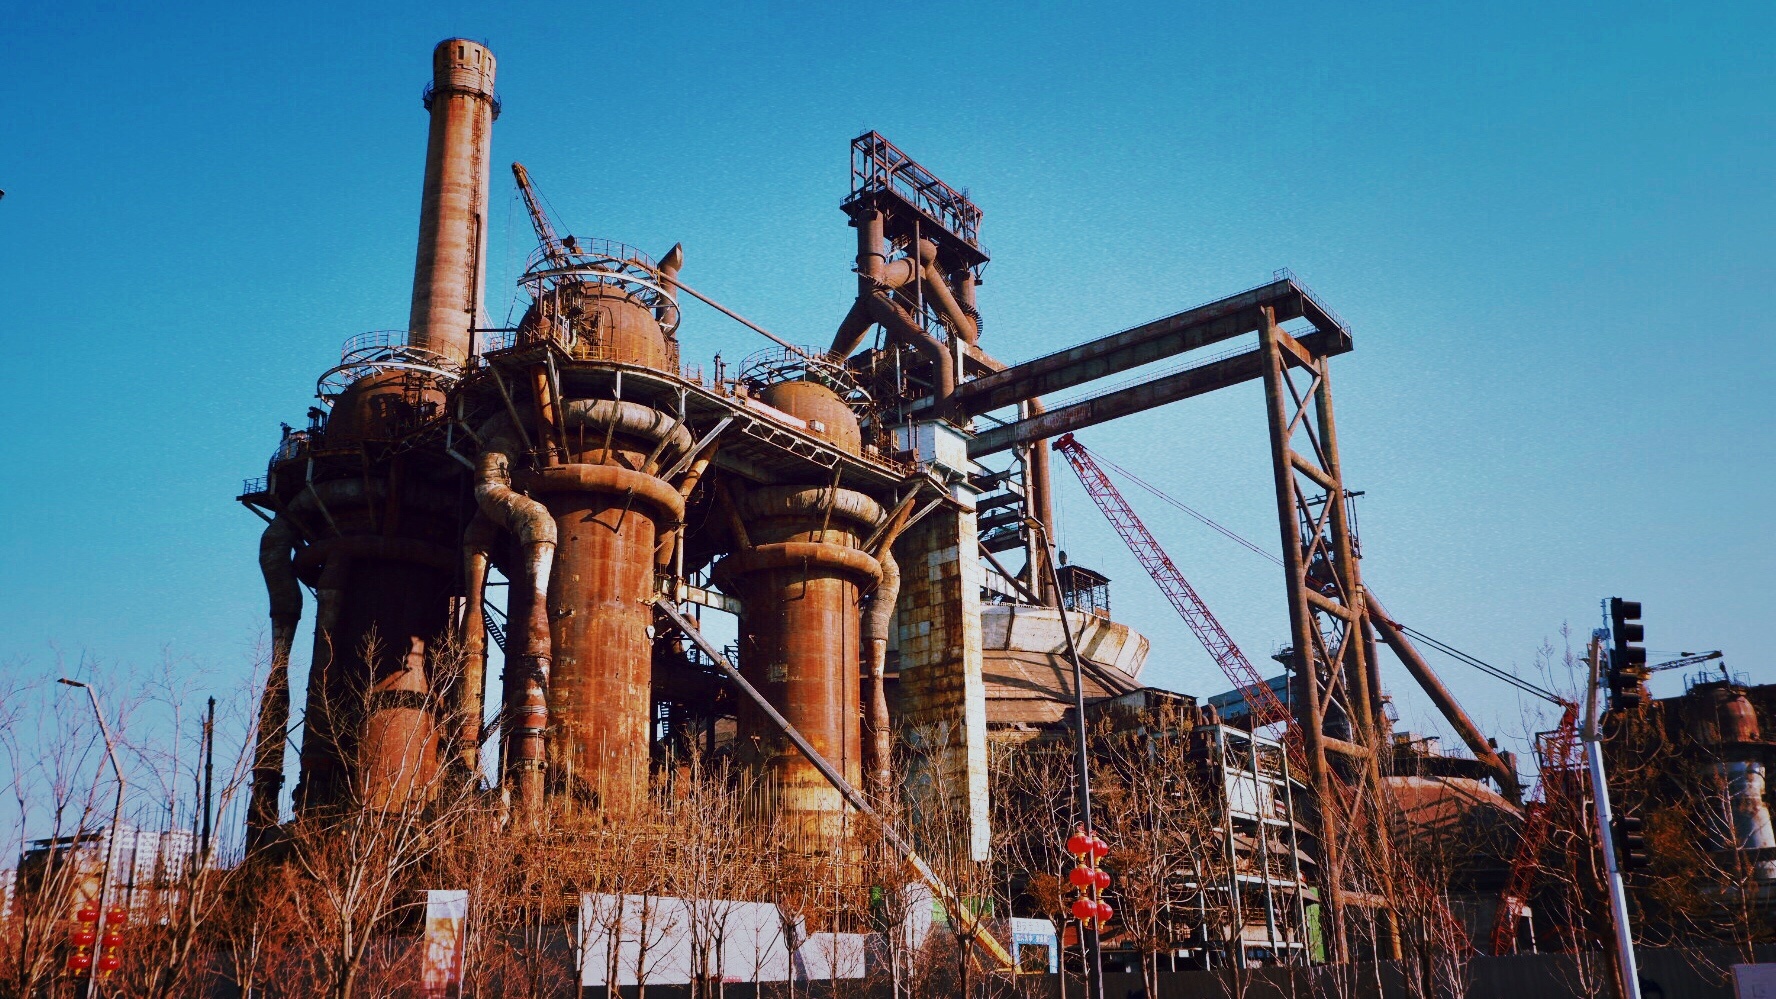 中国十九冶是名副其实的“世界高炉建设之王”，持续书写跨越世纪的高炉传奇 - 中国十九冶集团有限公司